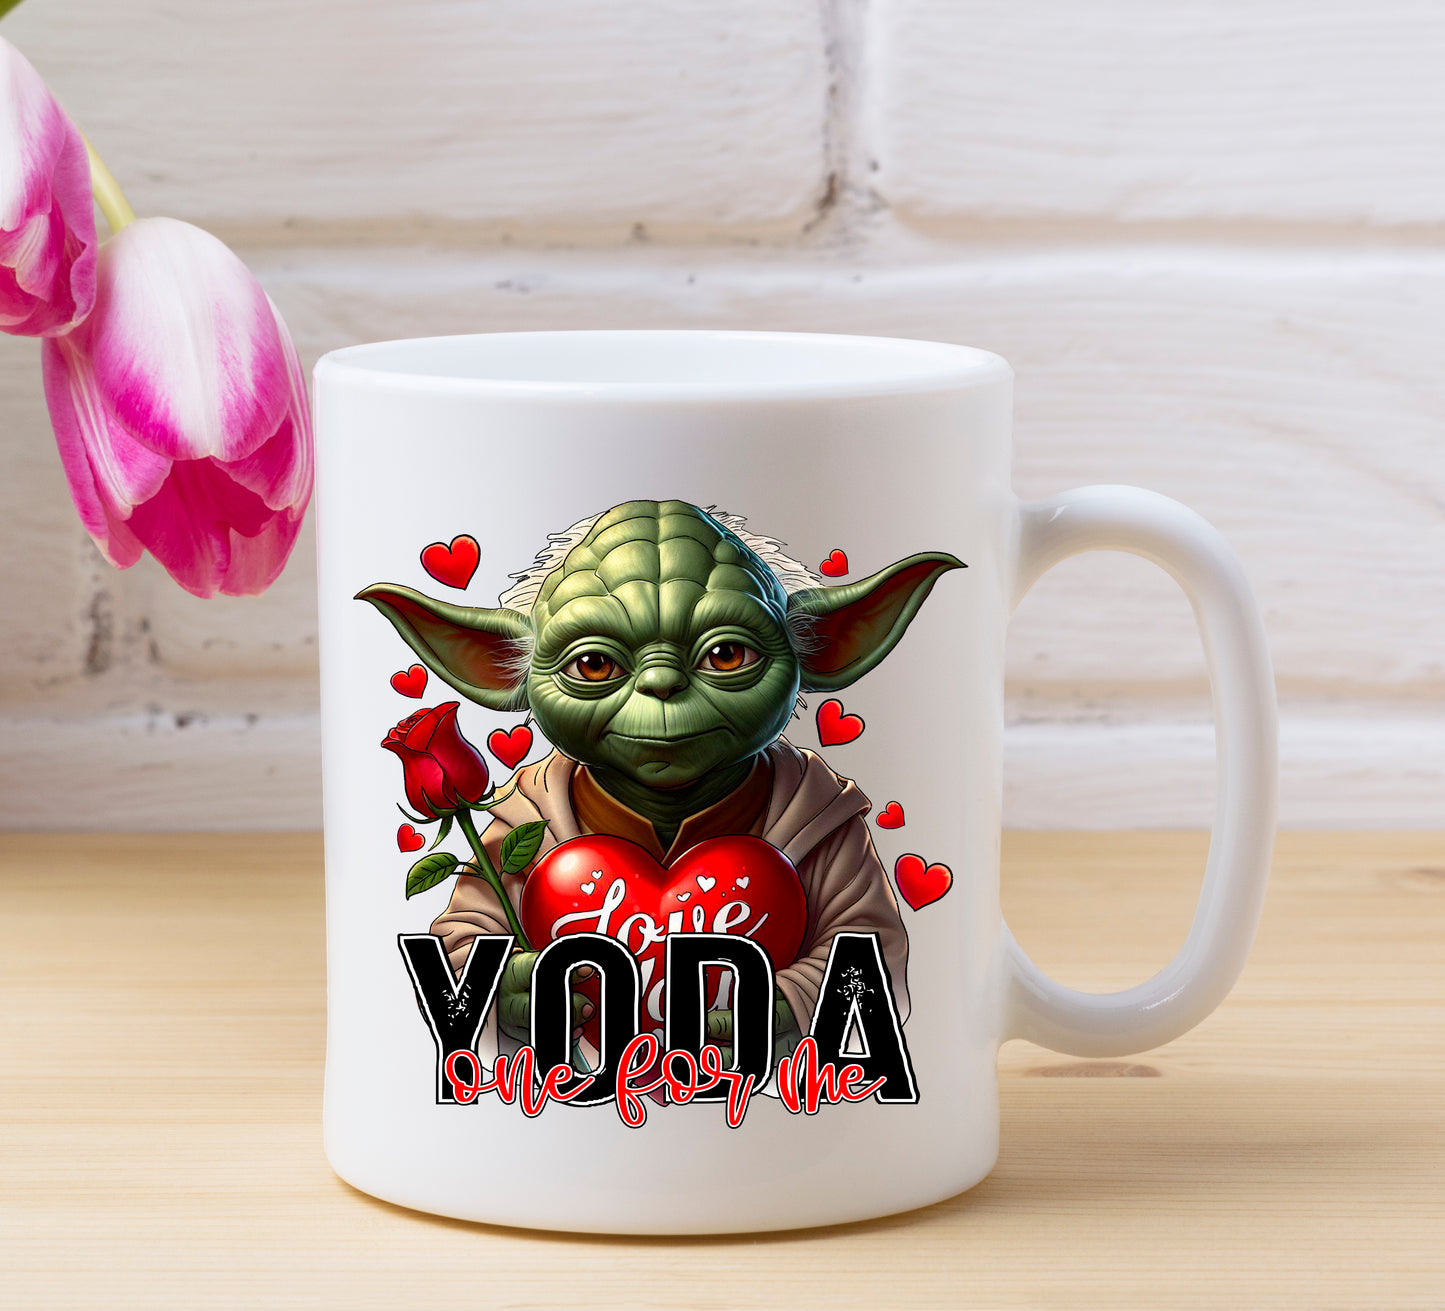 Yoda One for Me Mug